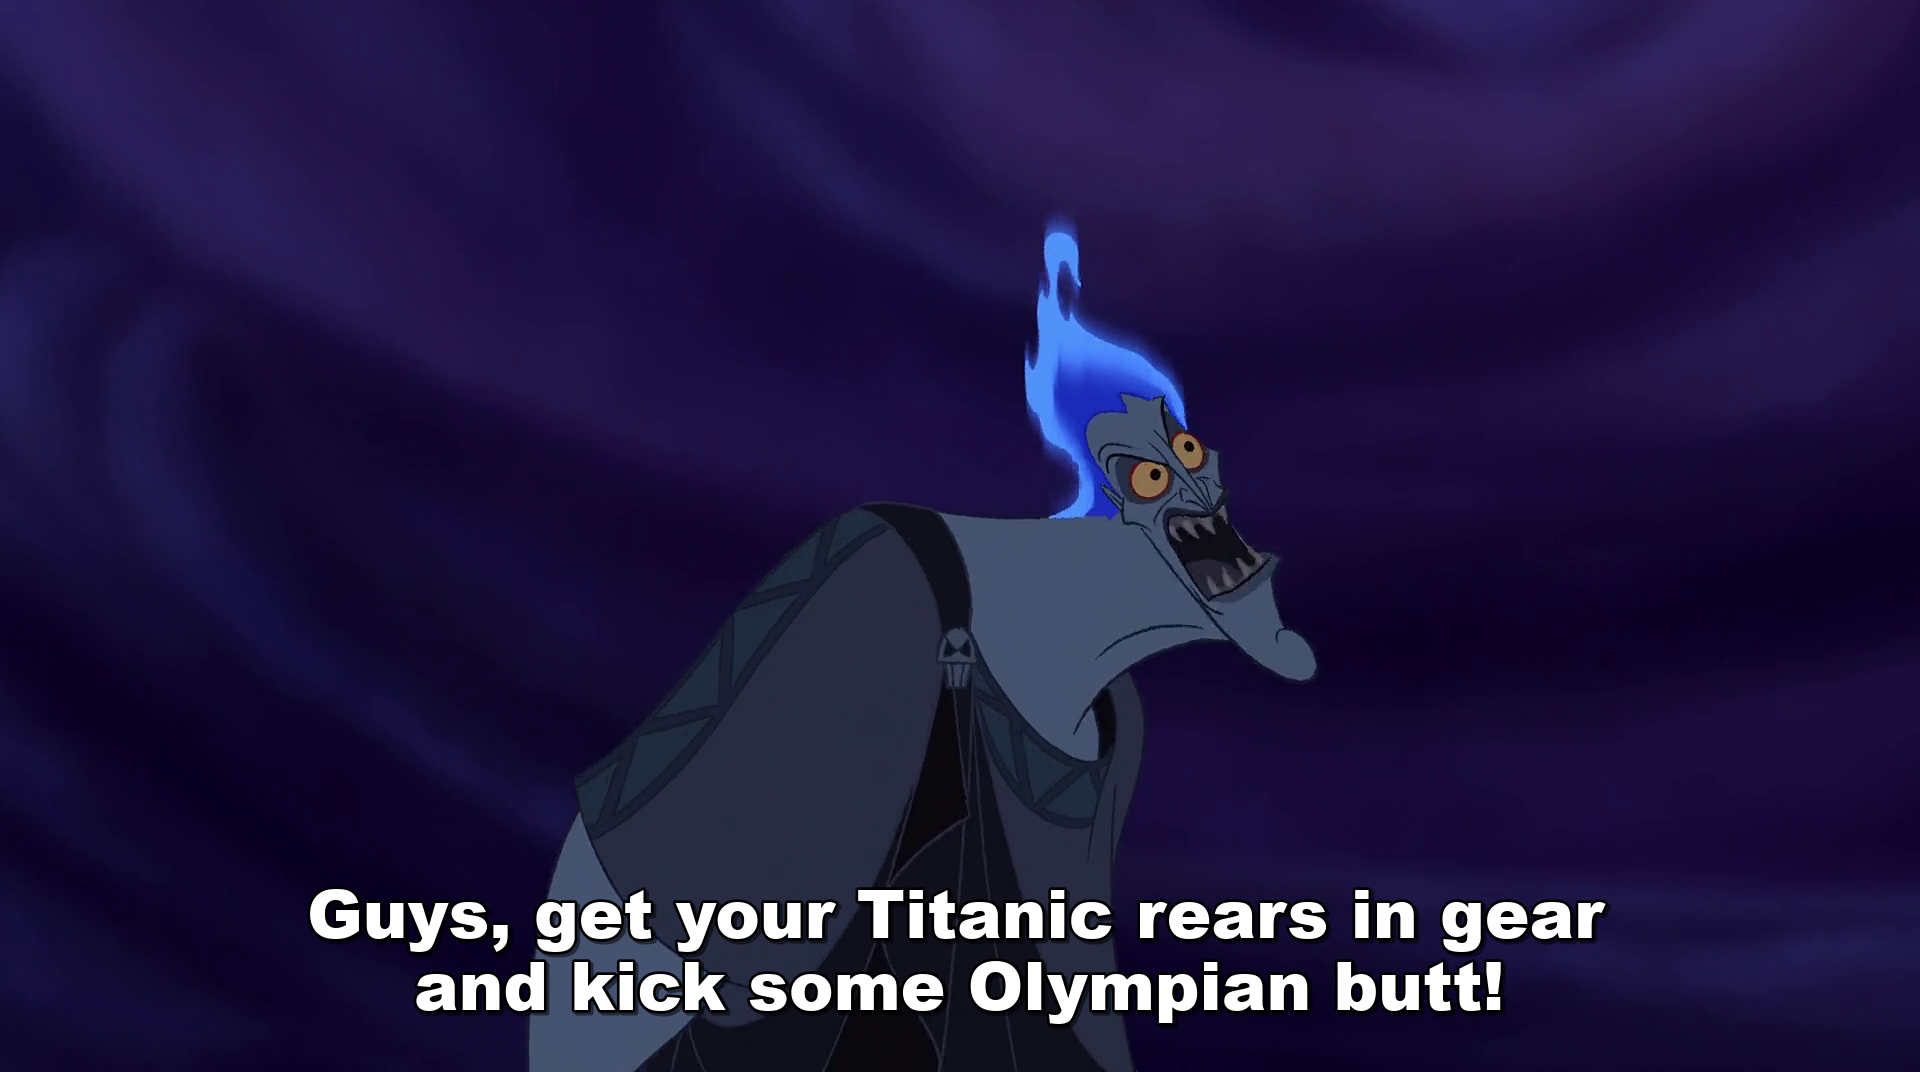 Greek Mythology Disney Hercules Hades Titanic Gear Olympics Blank Meme Template